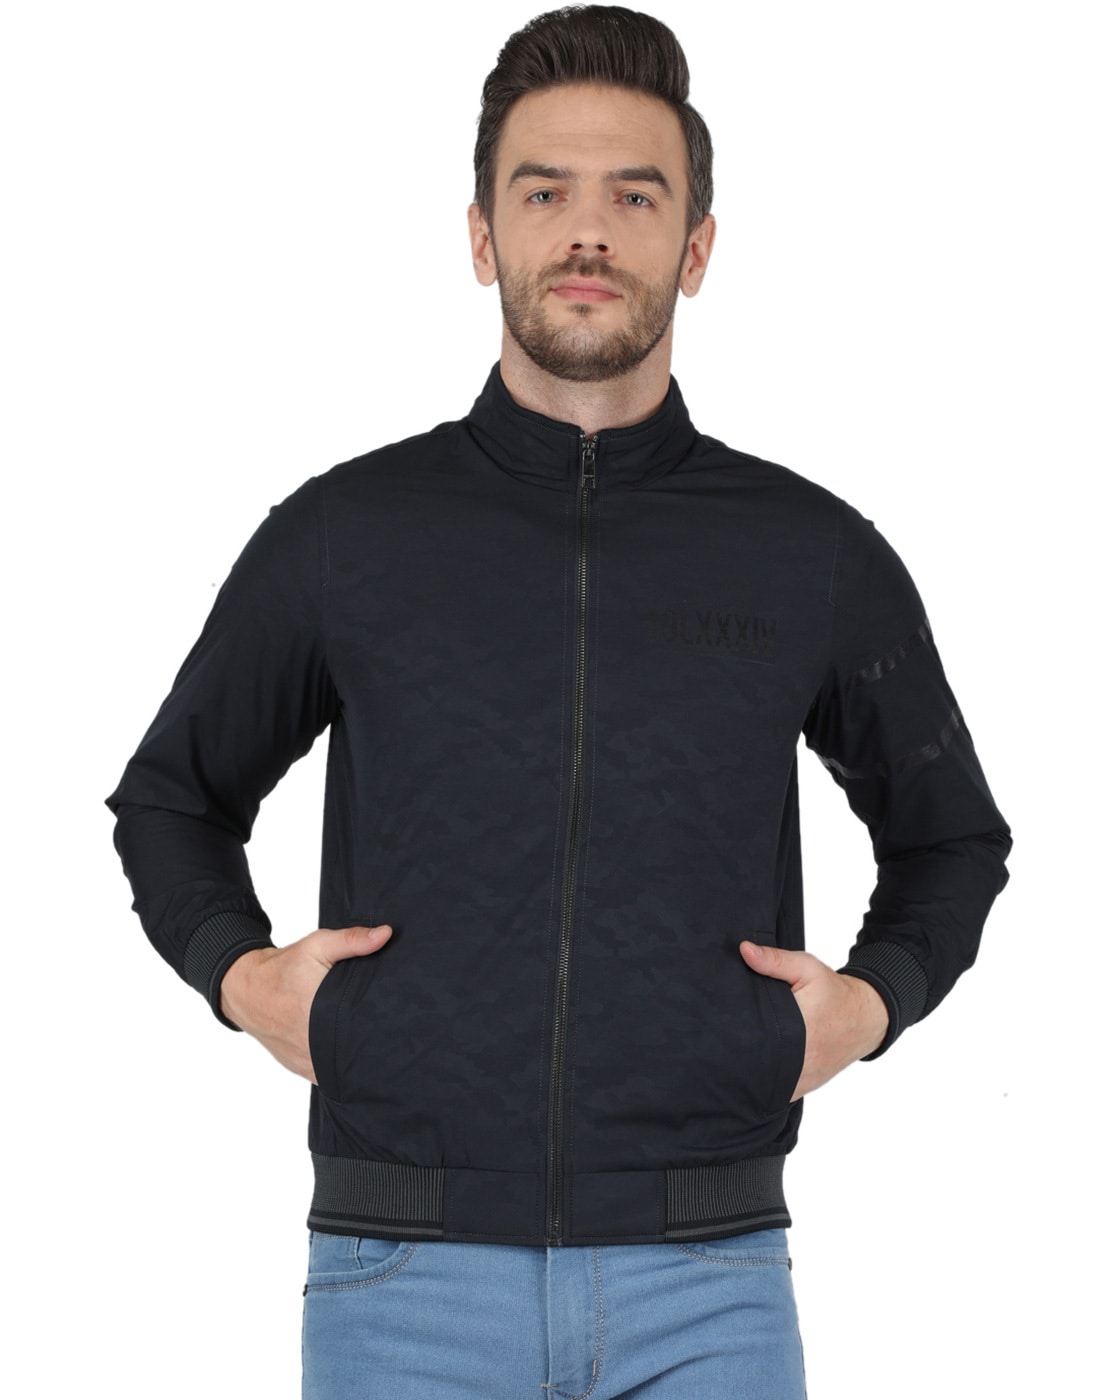 Buy Men Black Solid Hooded Full Sleeve Jacket Online in India - Monte Carlo